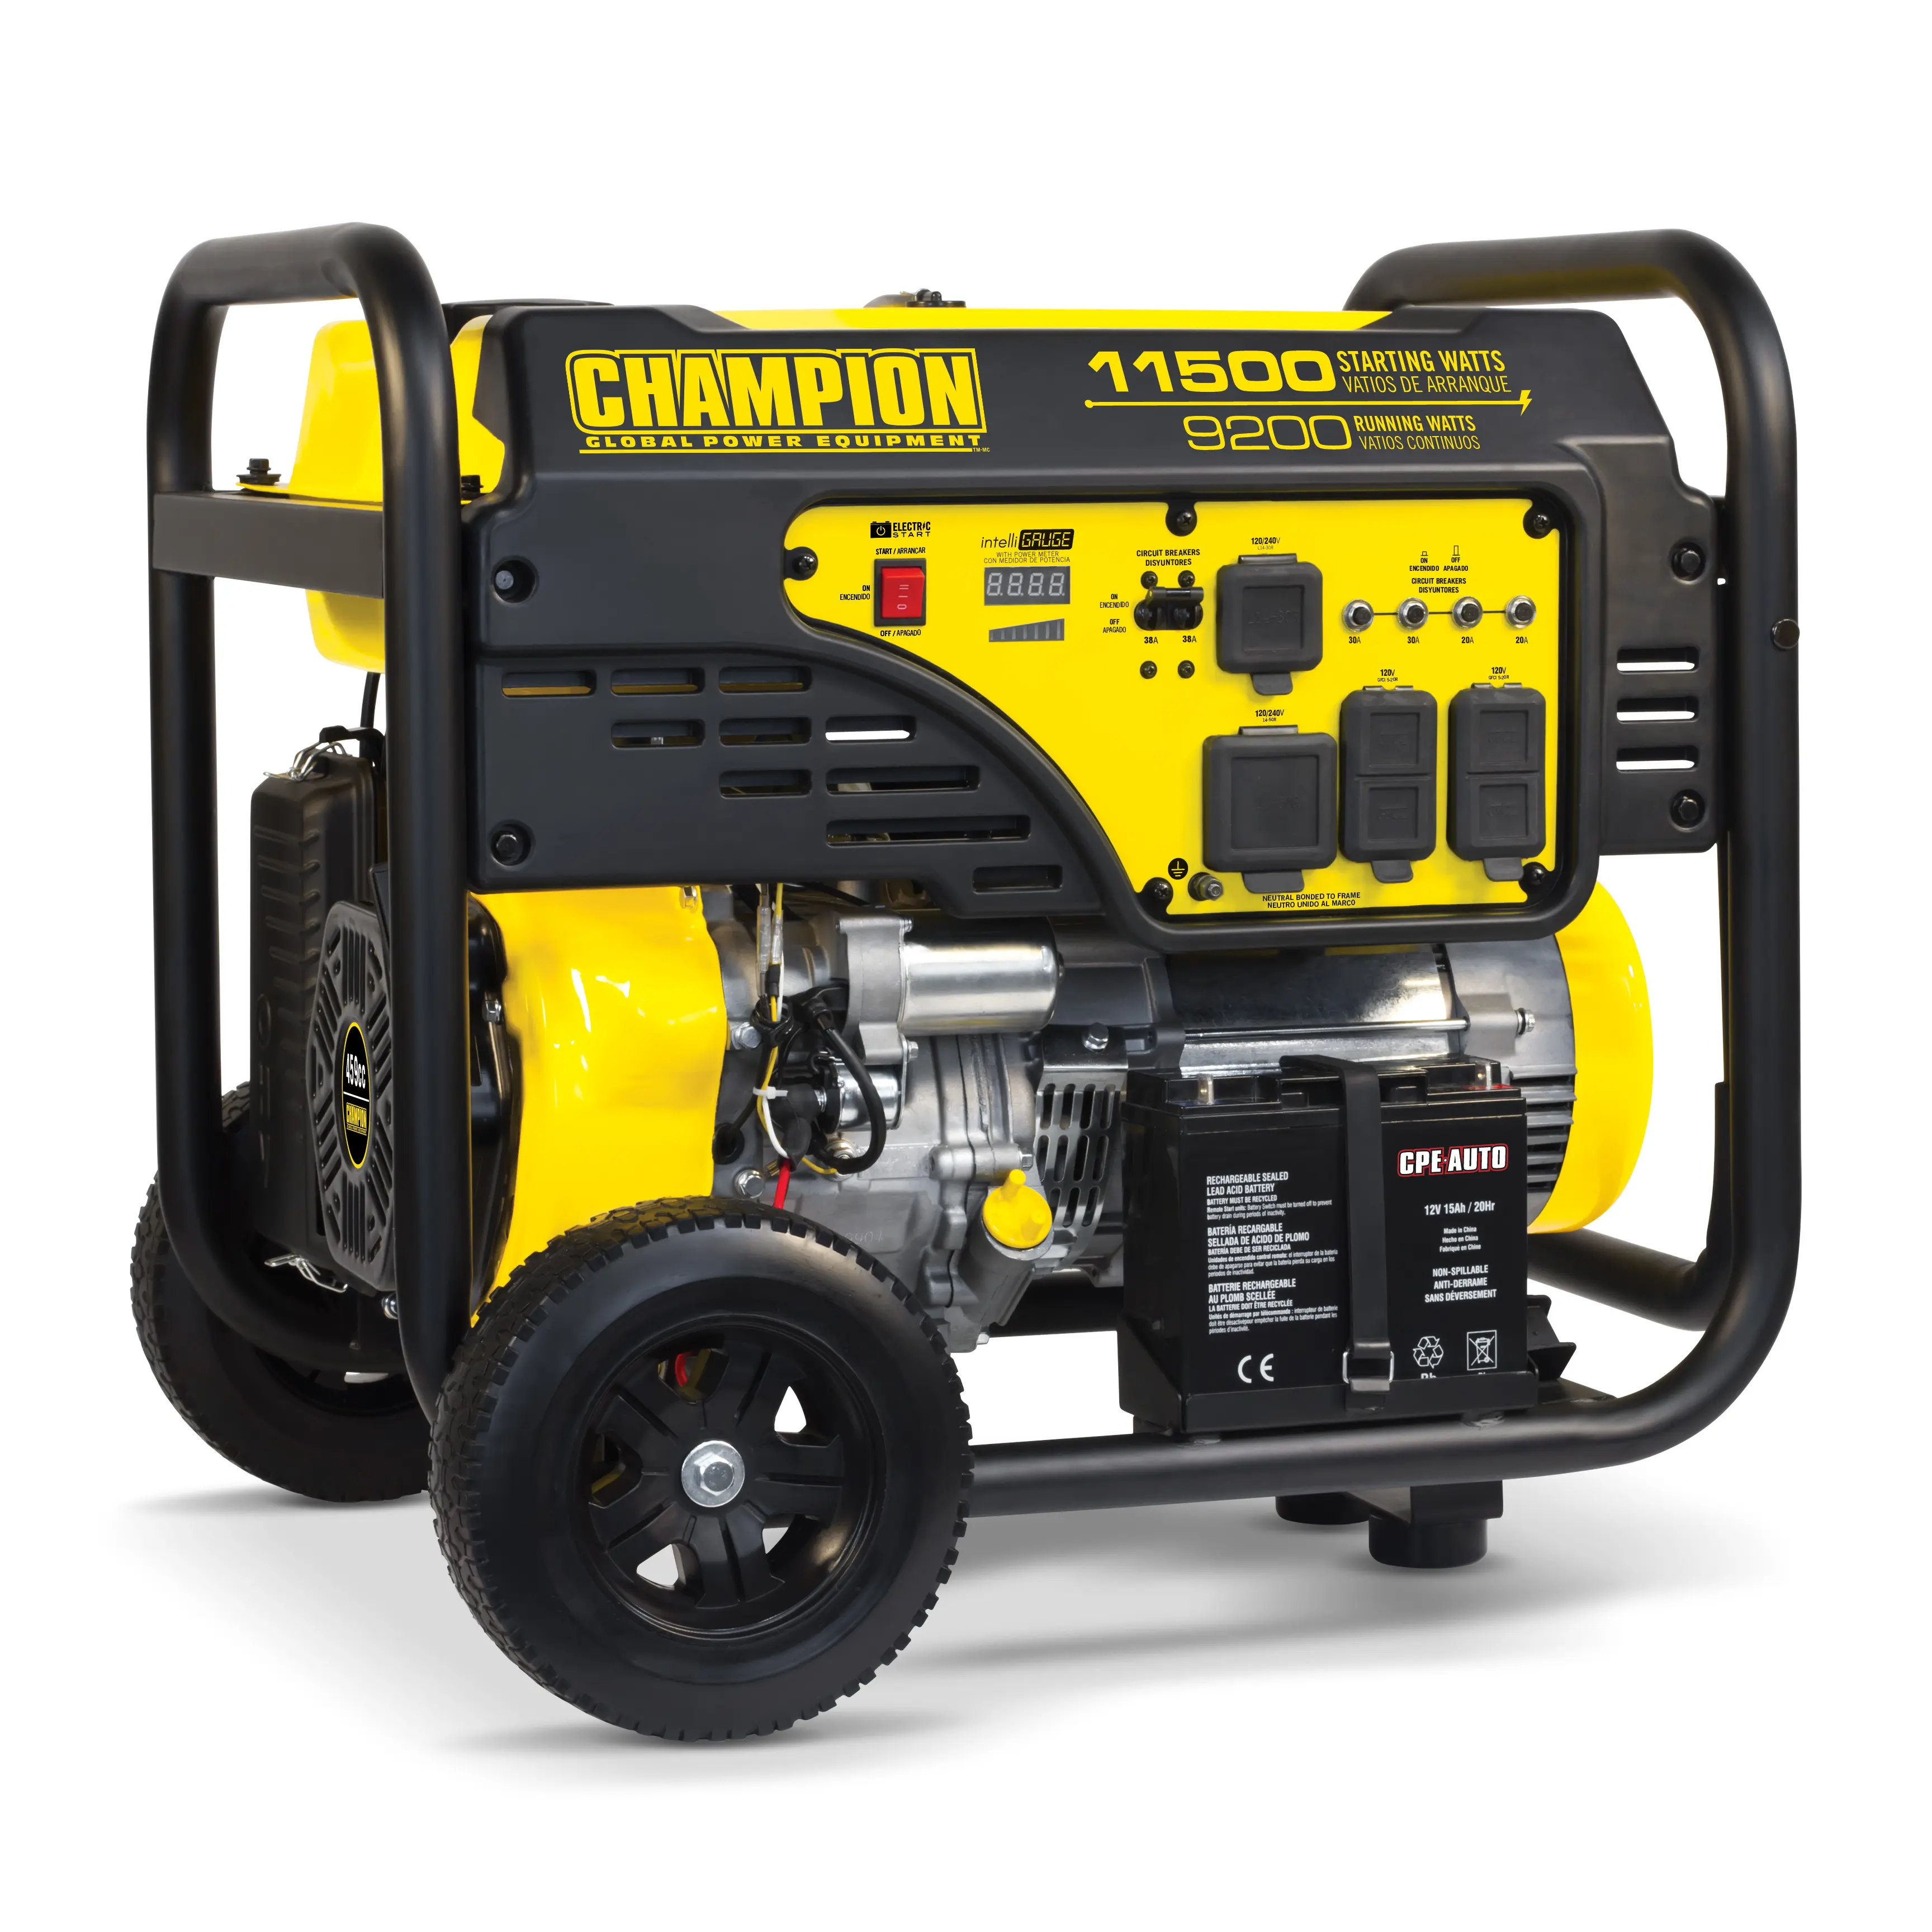 Campeón-generador portátil de gasolina para el hogar, 8000w, con mango y ruedas